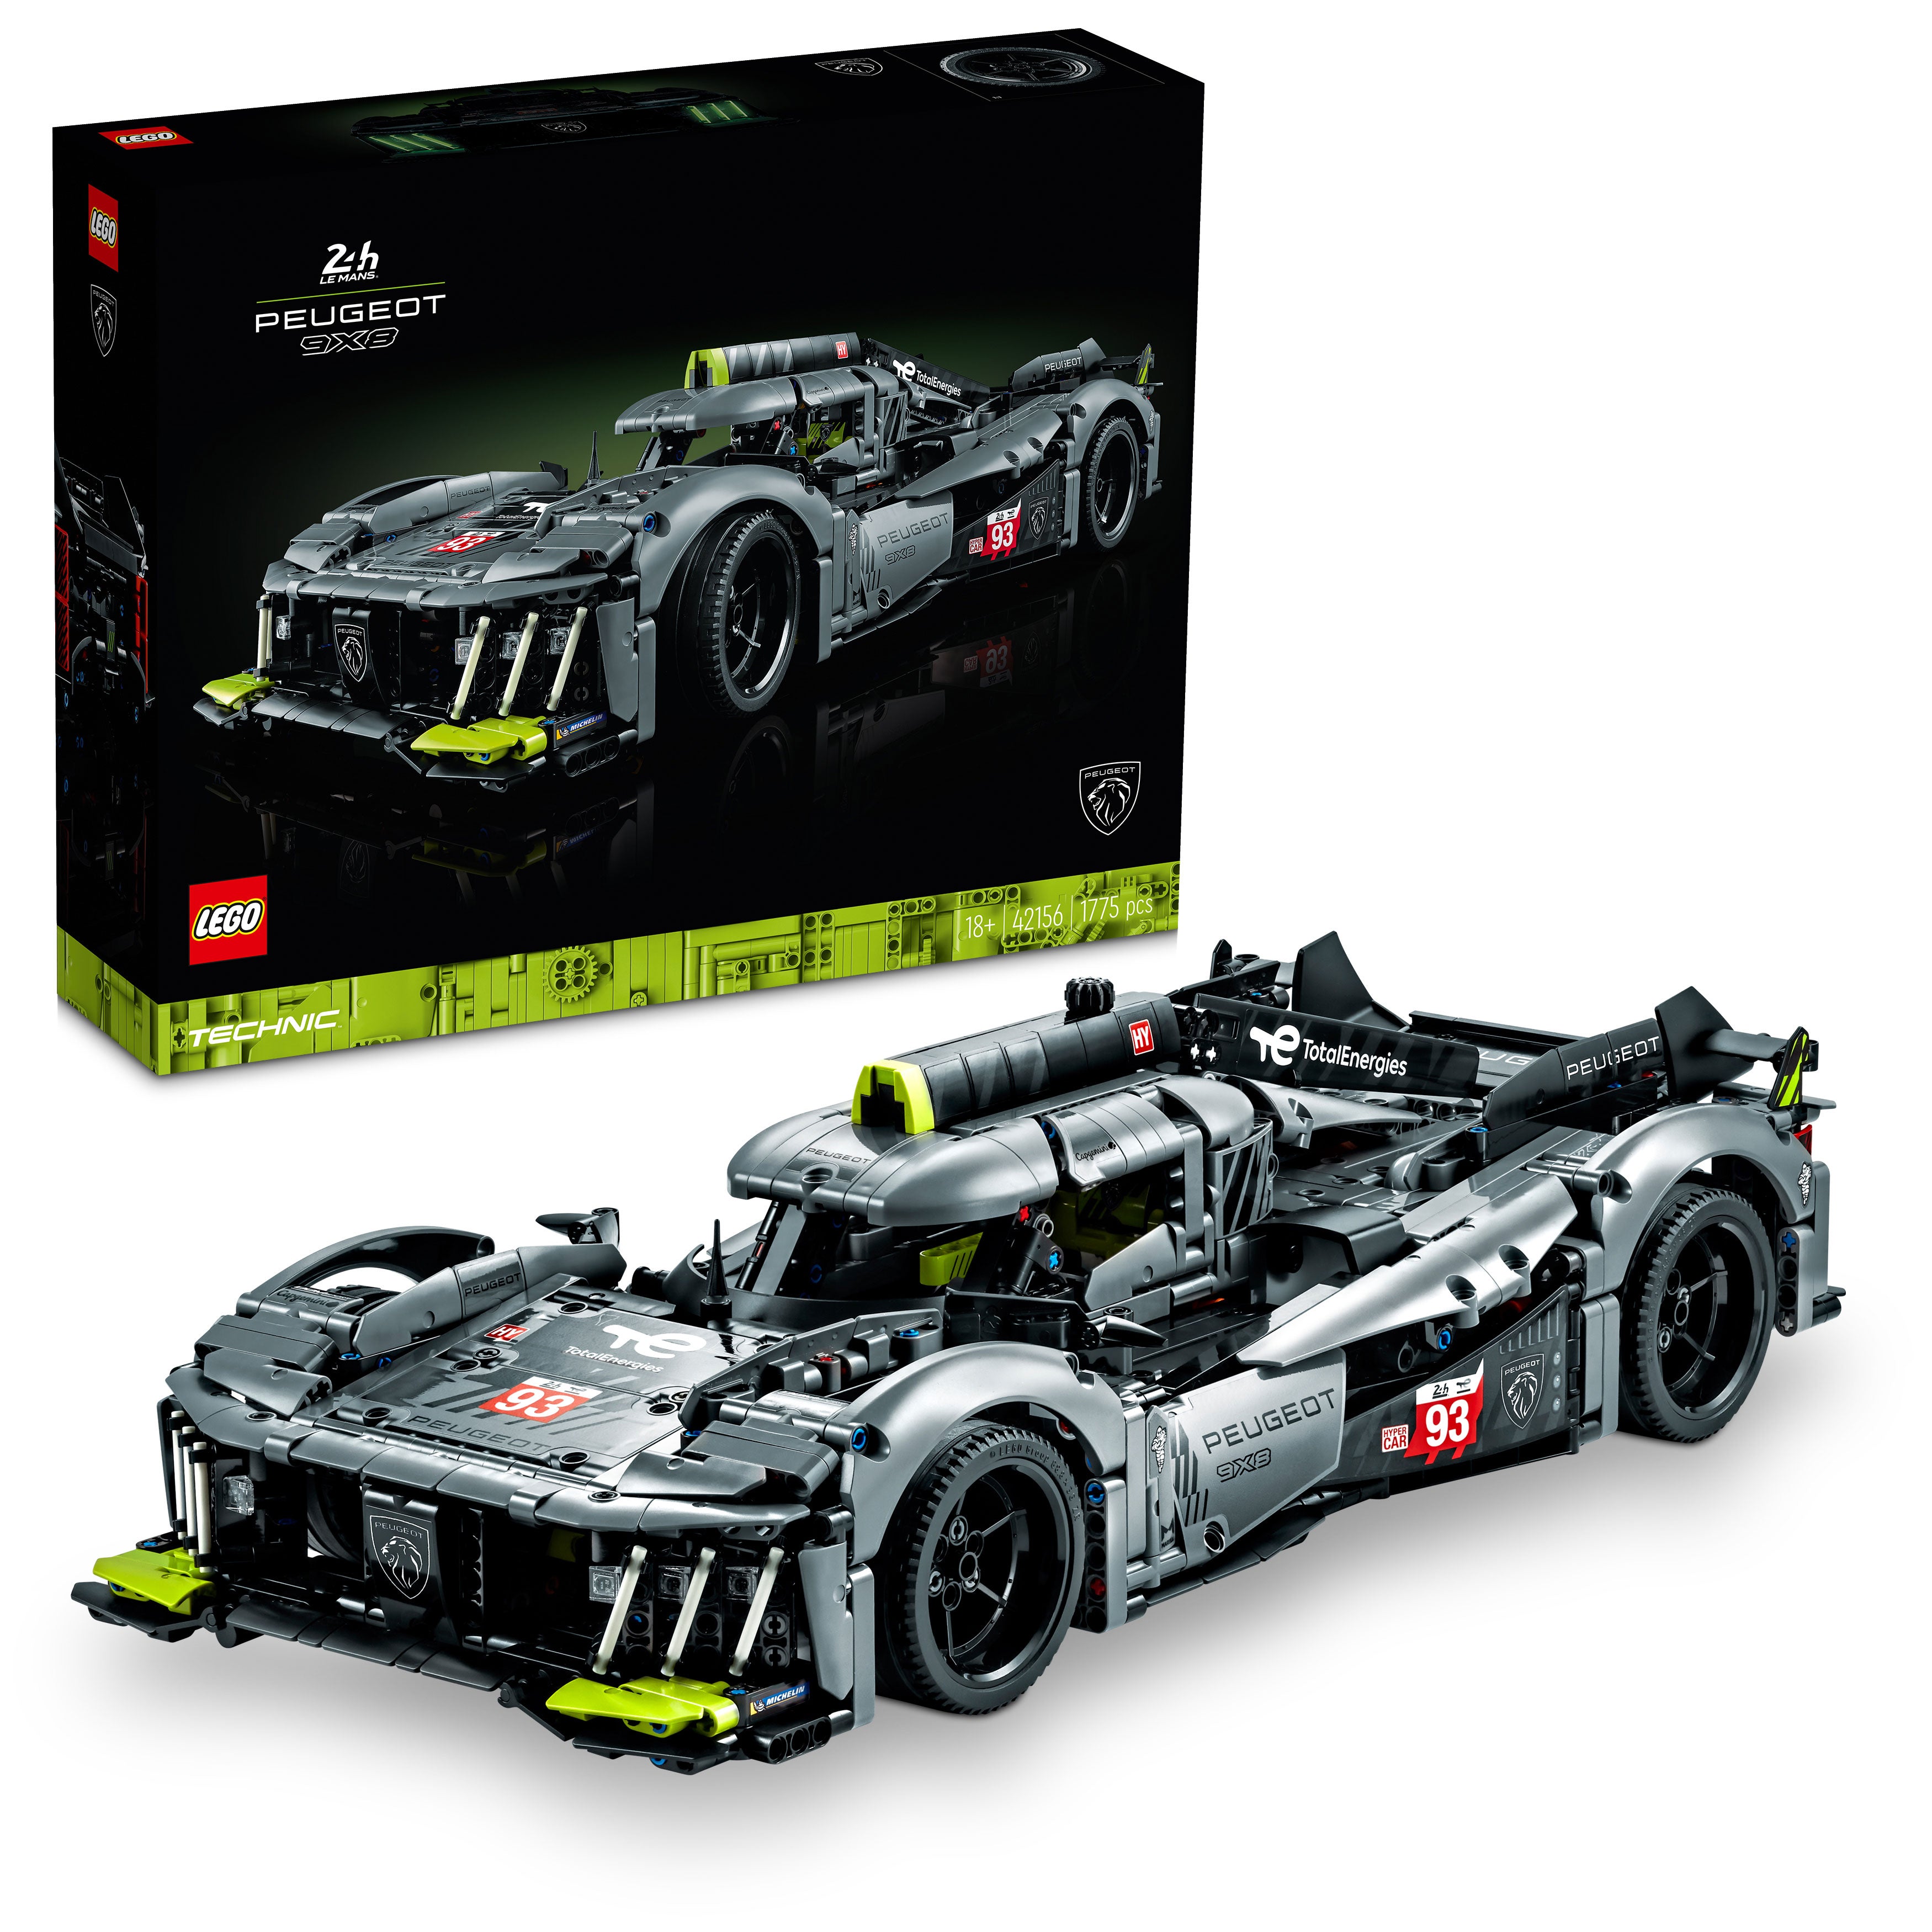 Lego 42156 Technic Peugeot 9x8H Le Mans Hybrid